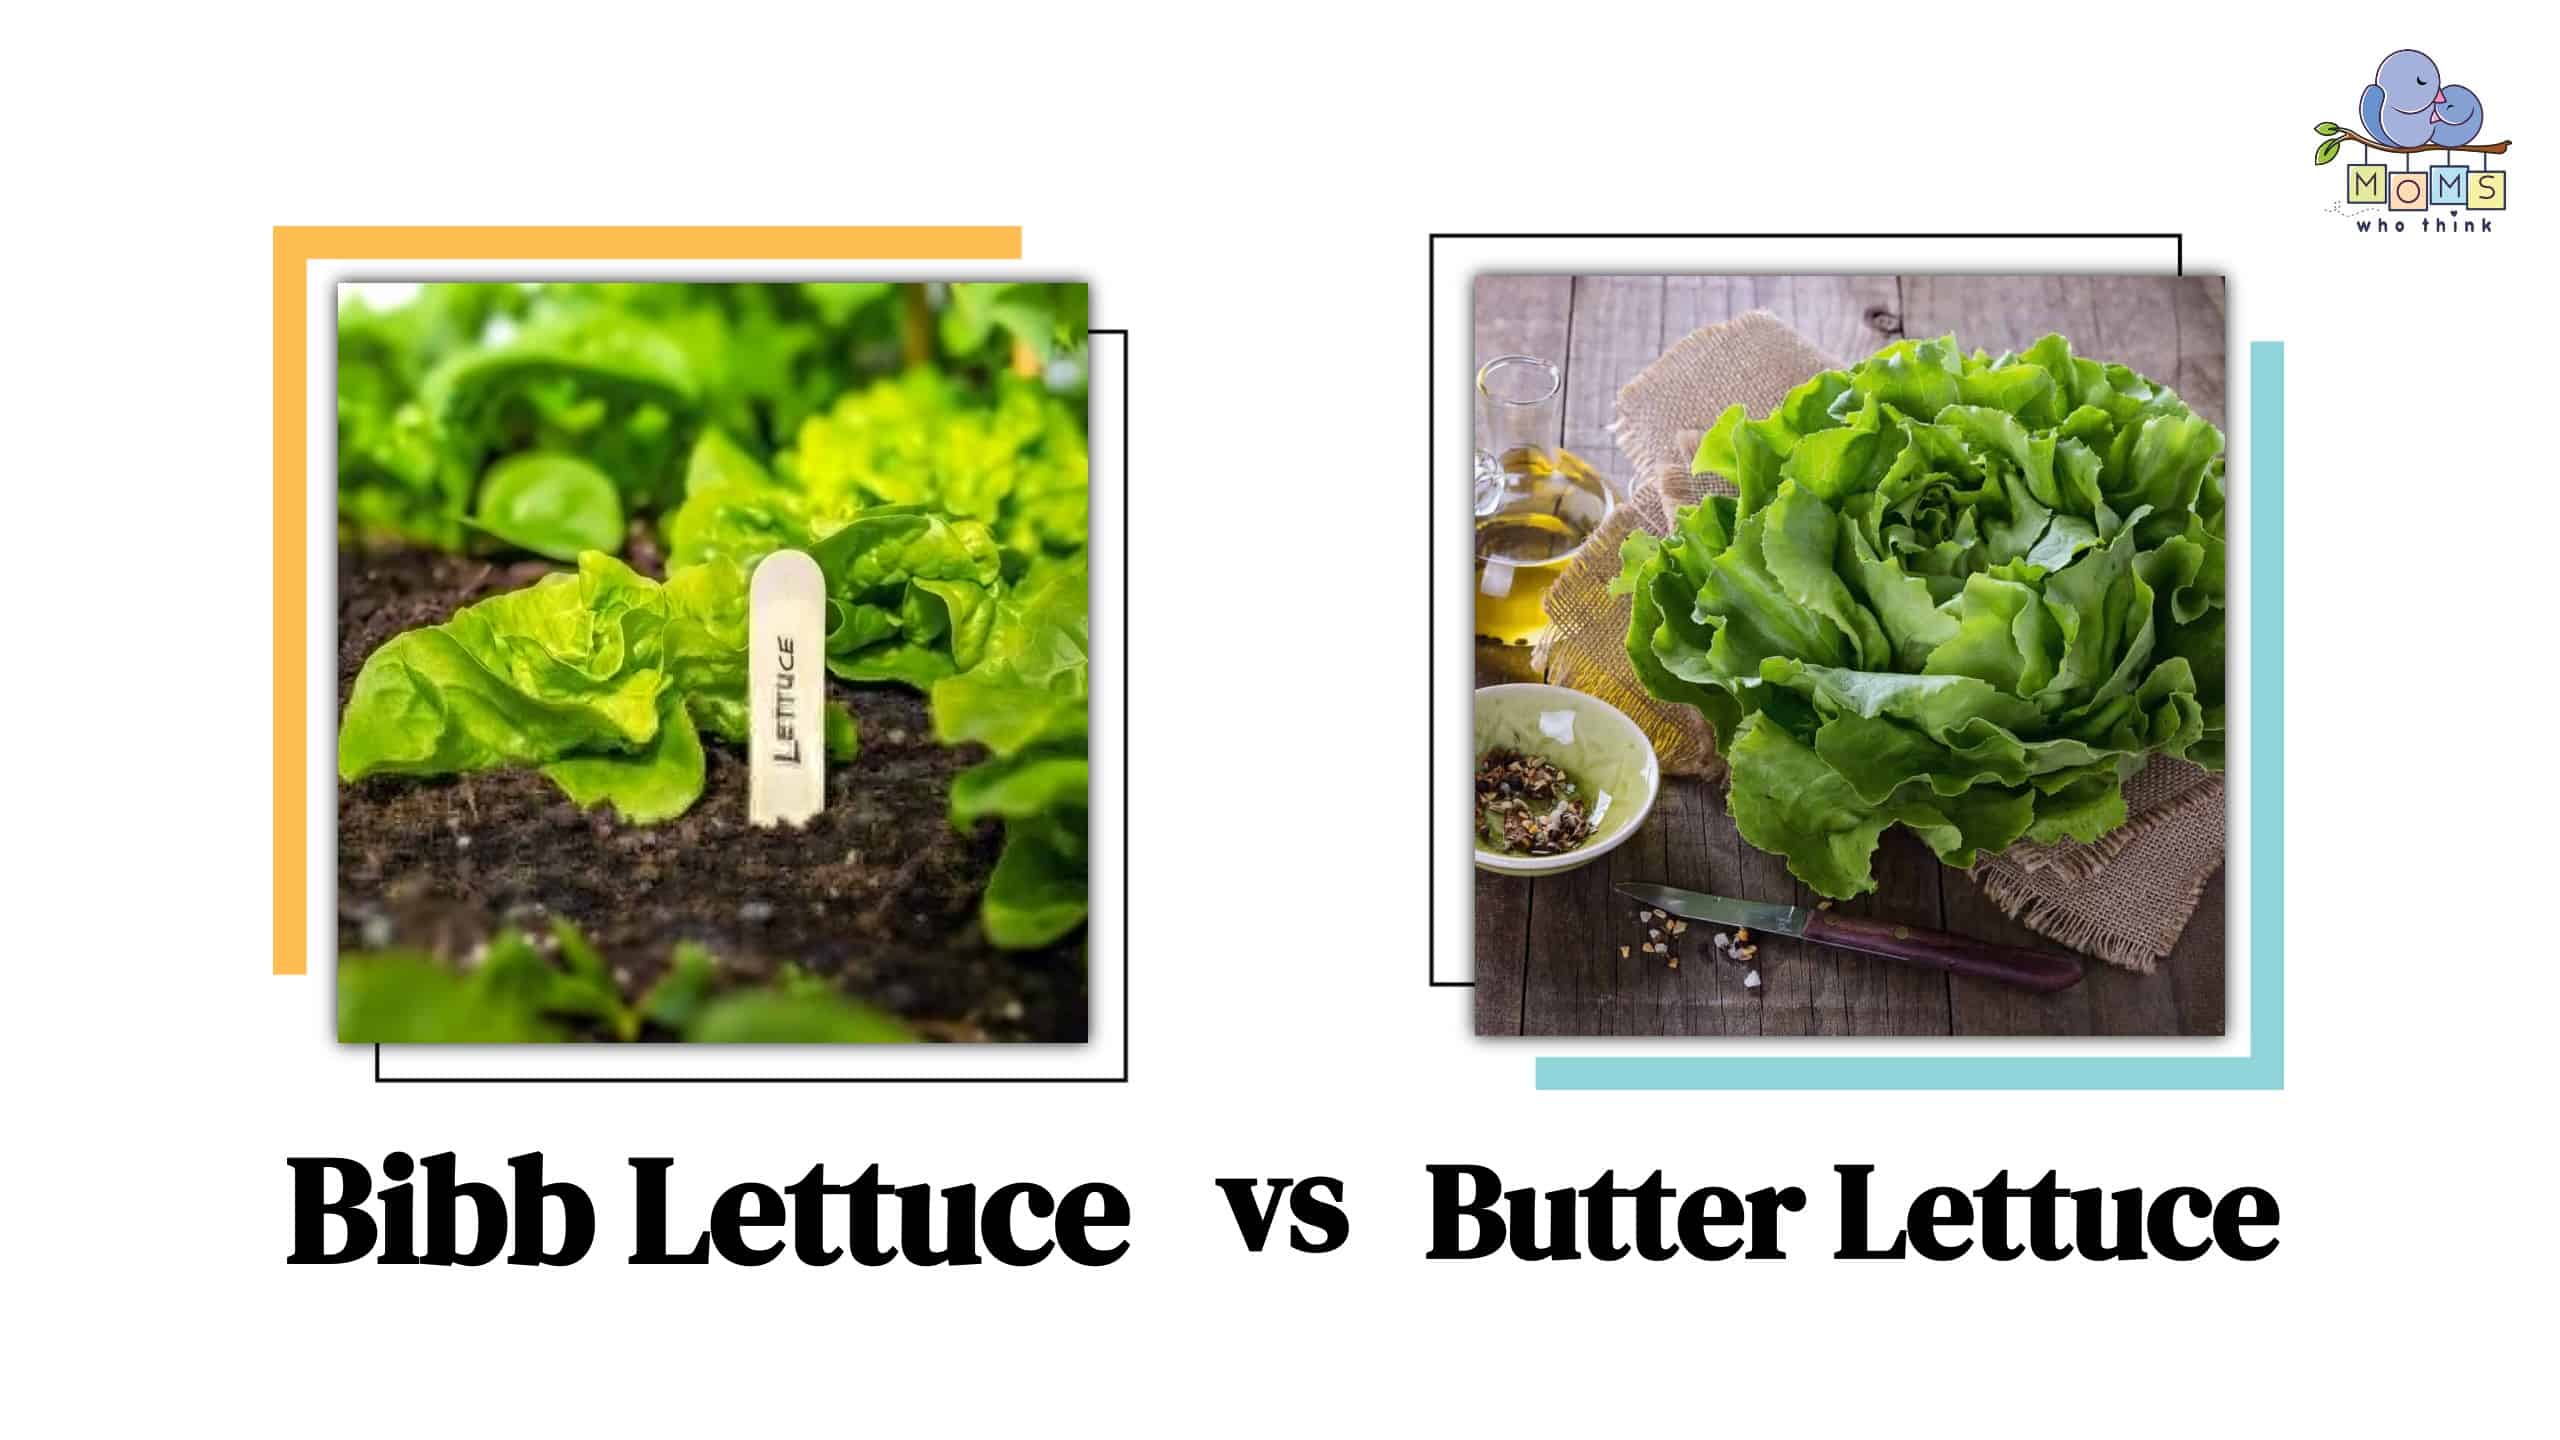 Bibb Lettuce vs Butter Lettuce